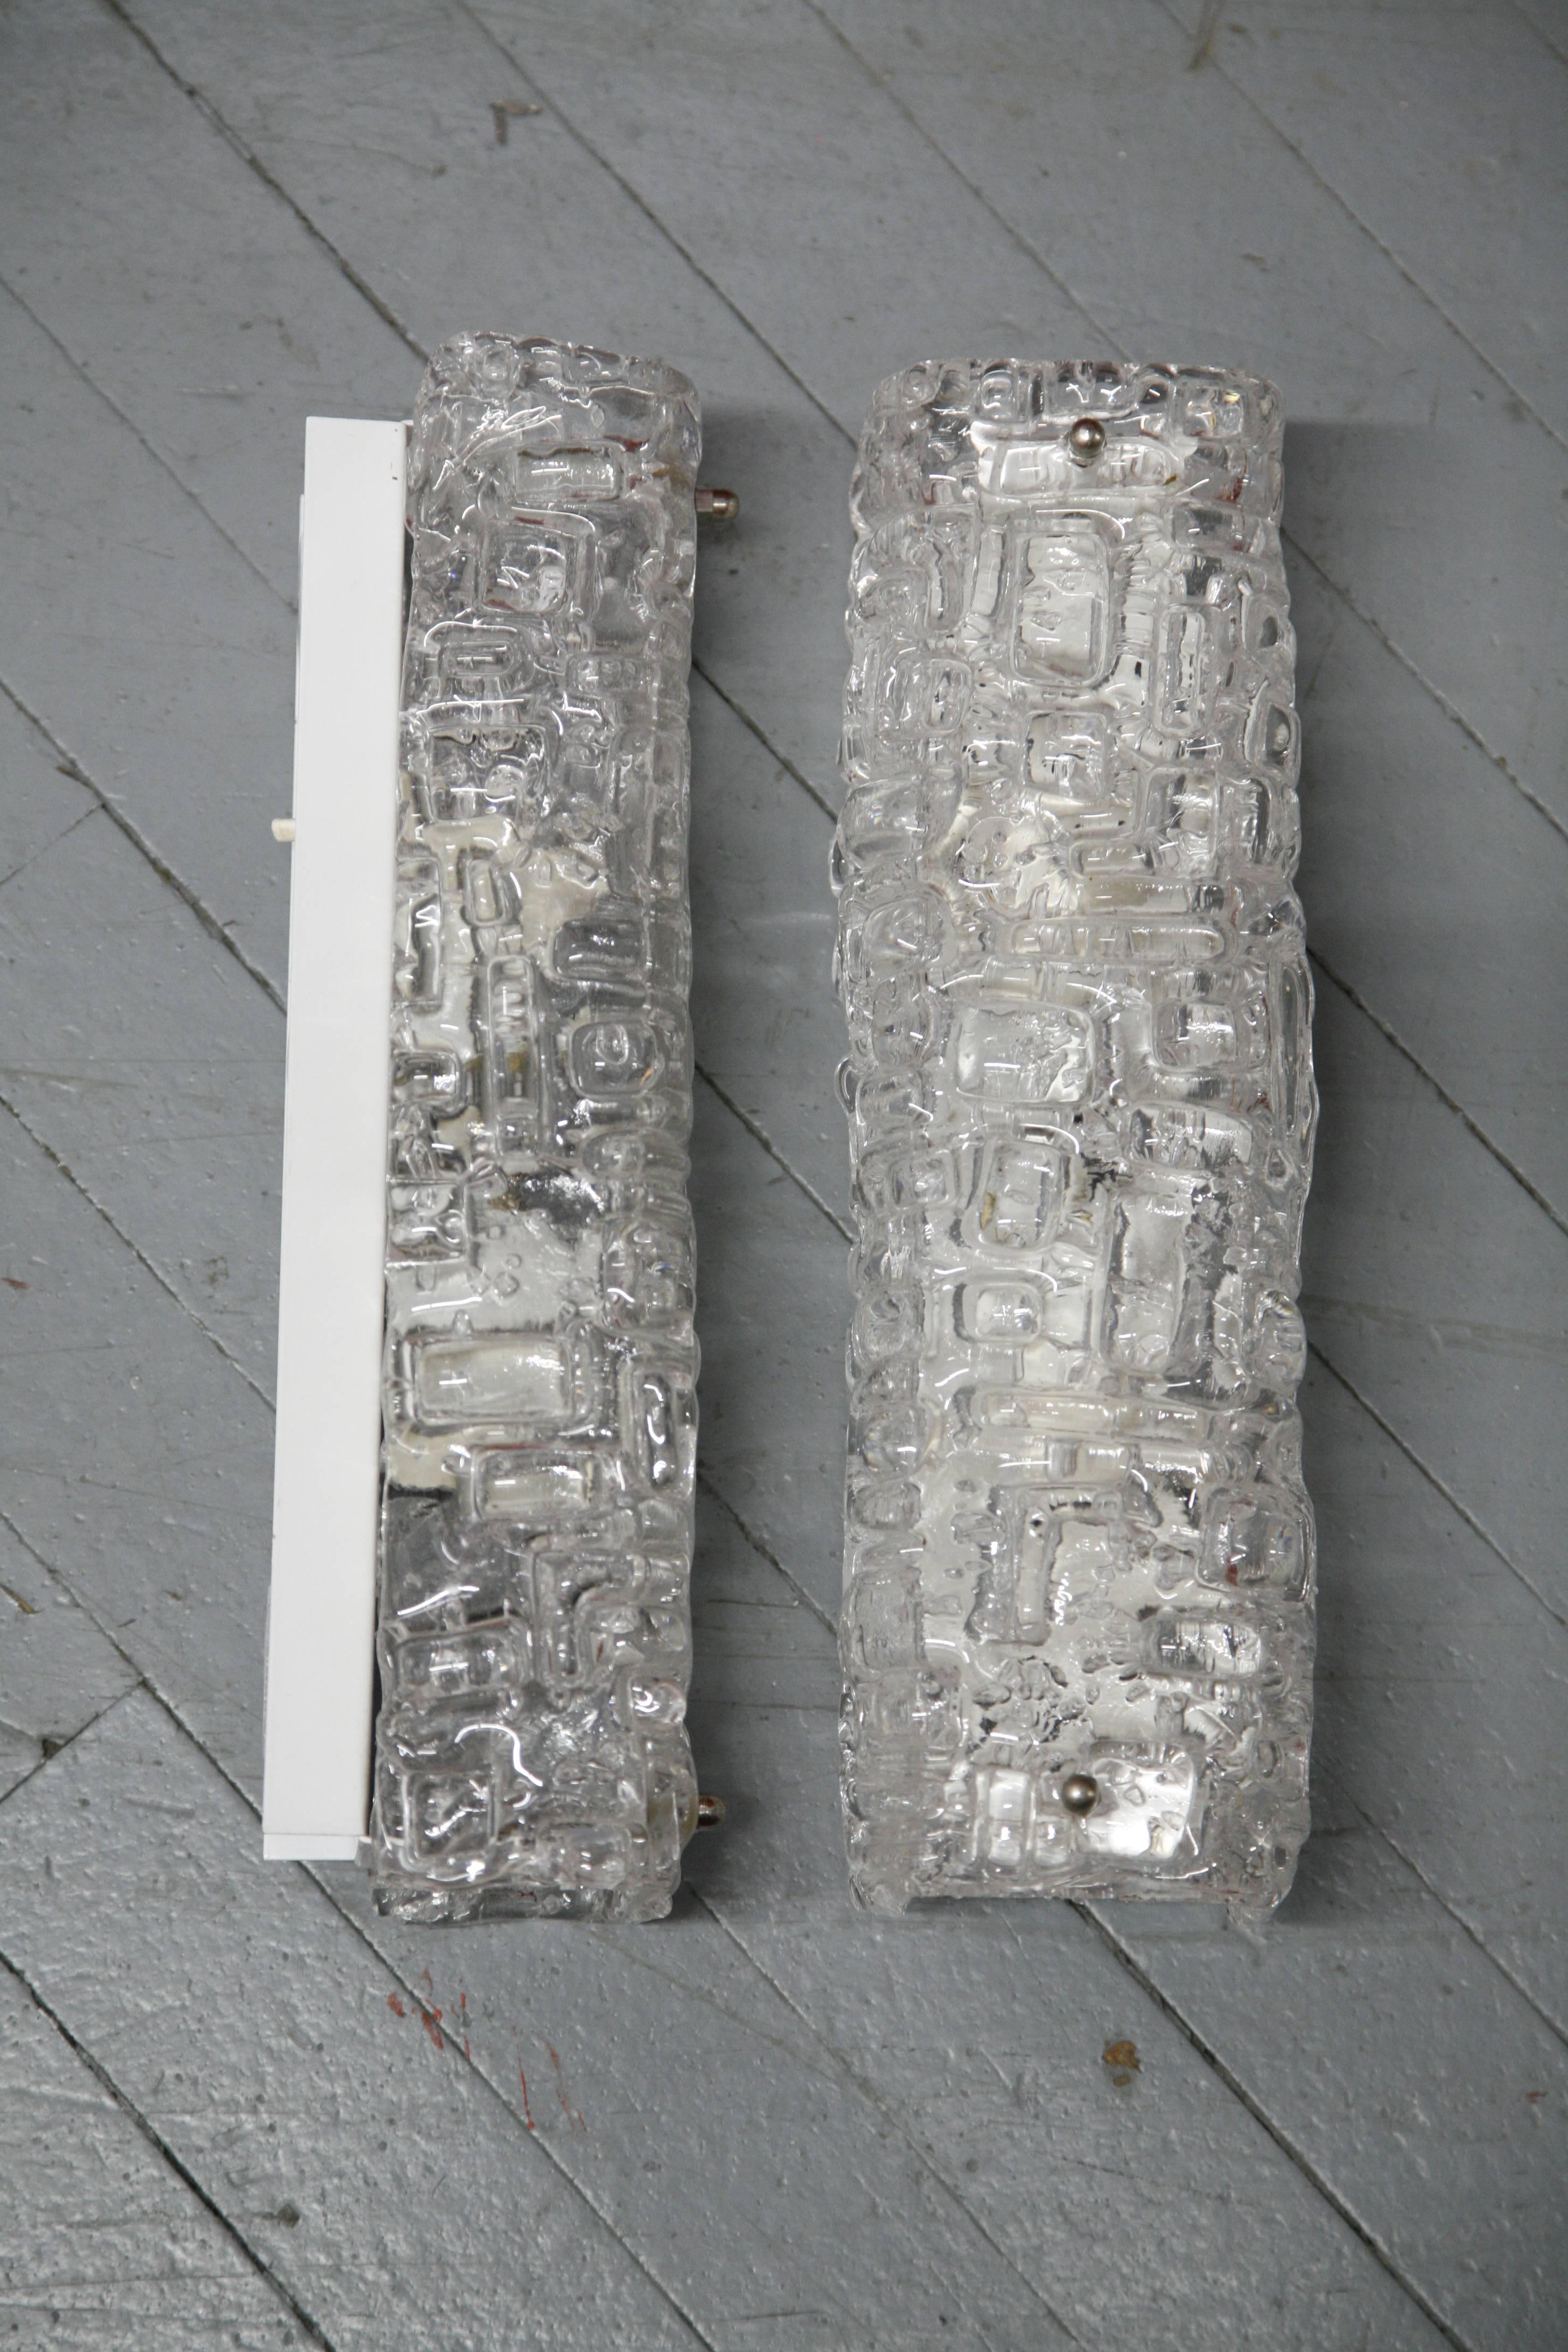 Paar schwedische, elegante, schlichte Wandleuchten von Fagerhult, Metallrahmen mit strukturiertem Klarglasschirm in Nickeloptik und weißem Sockel.

Rewired for the US.